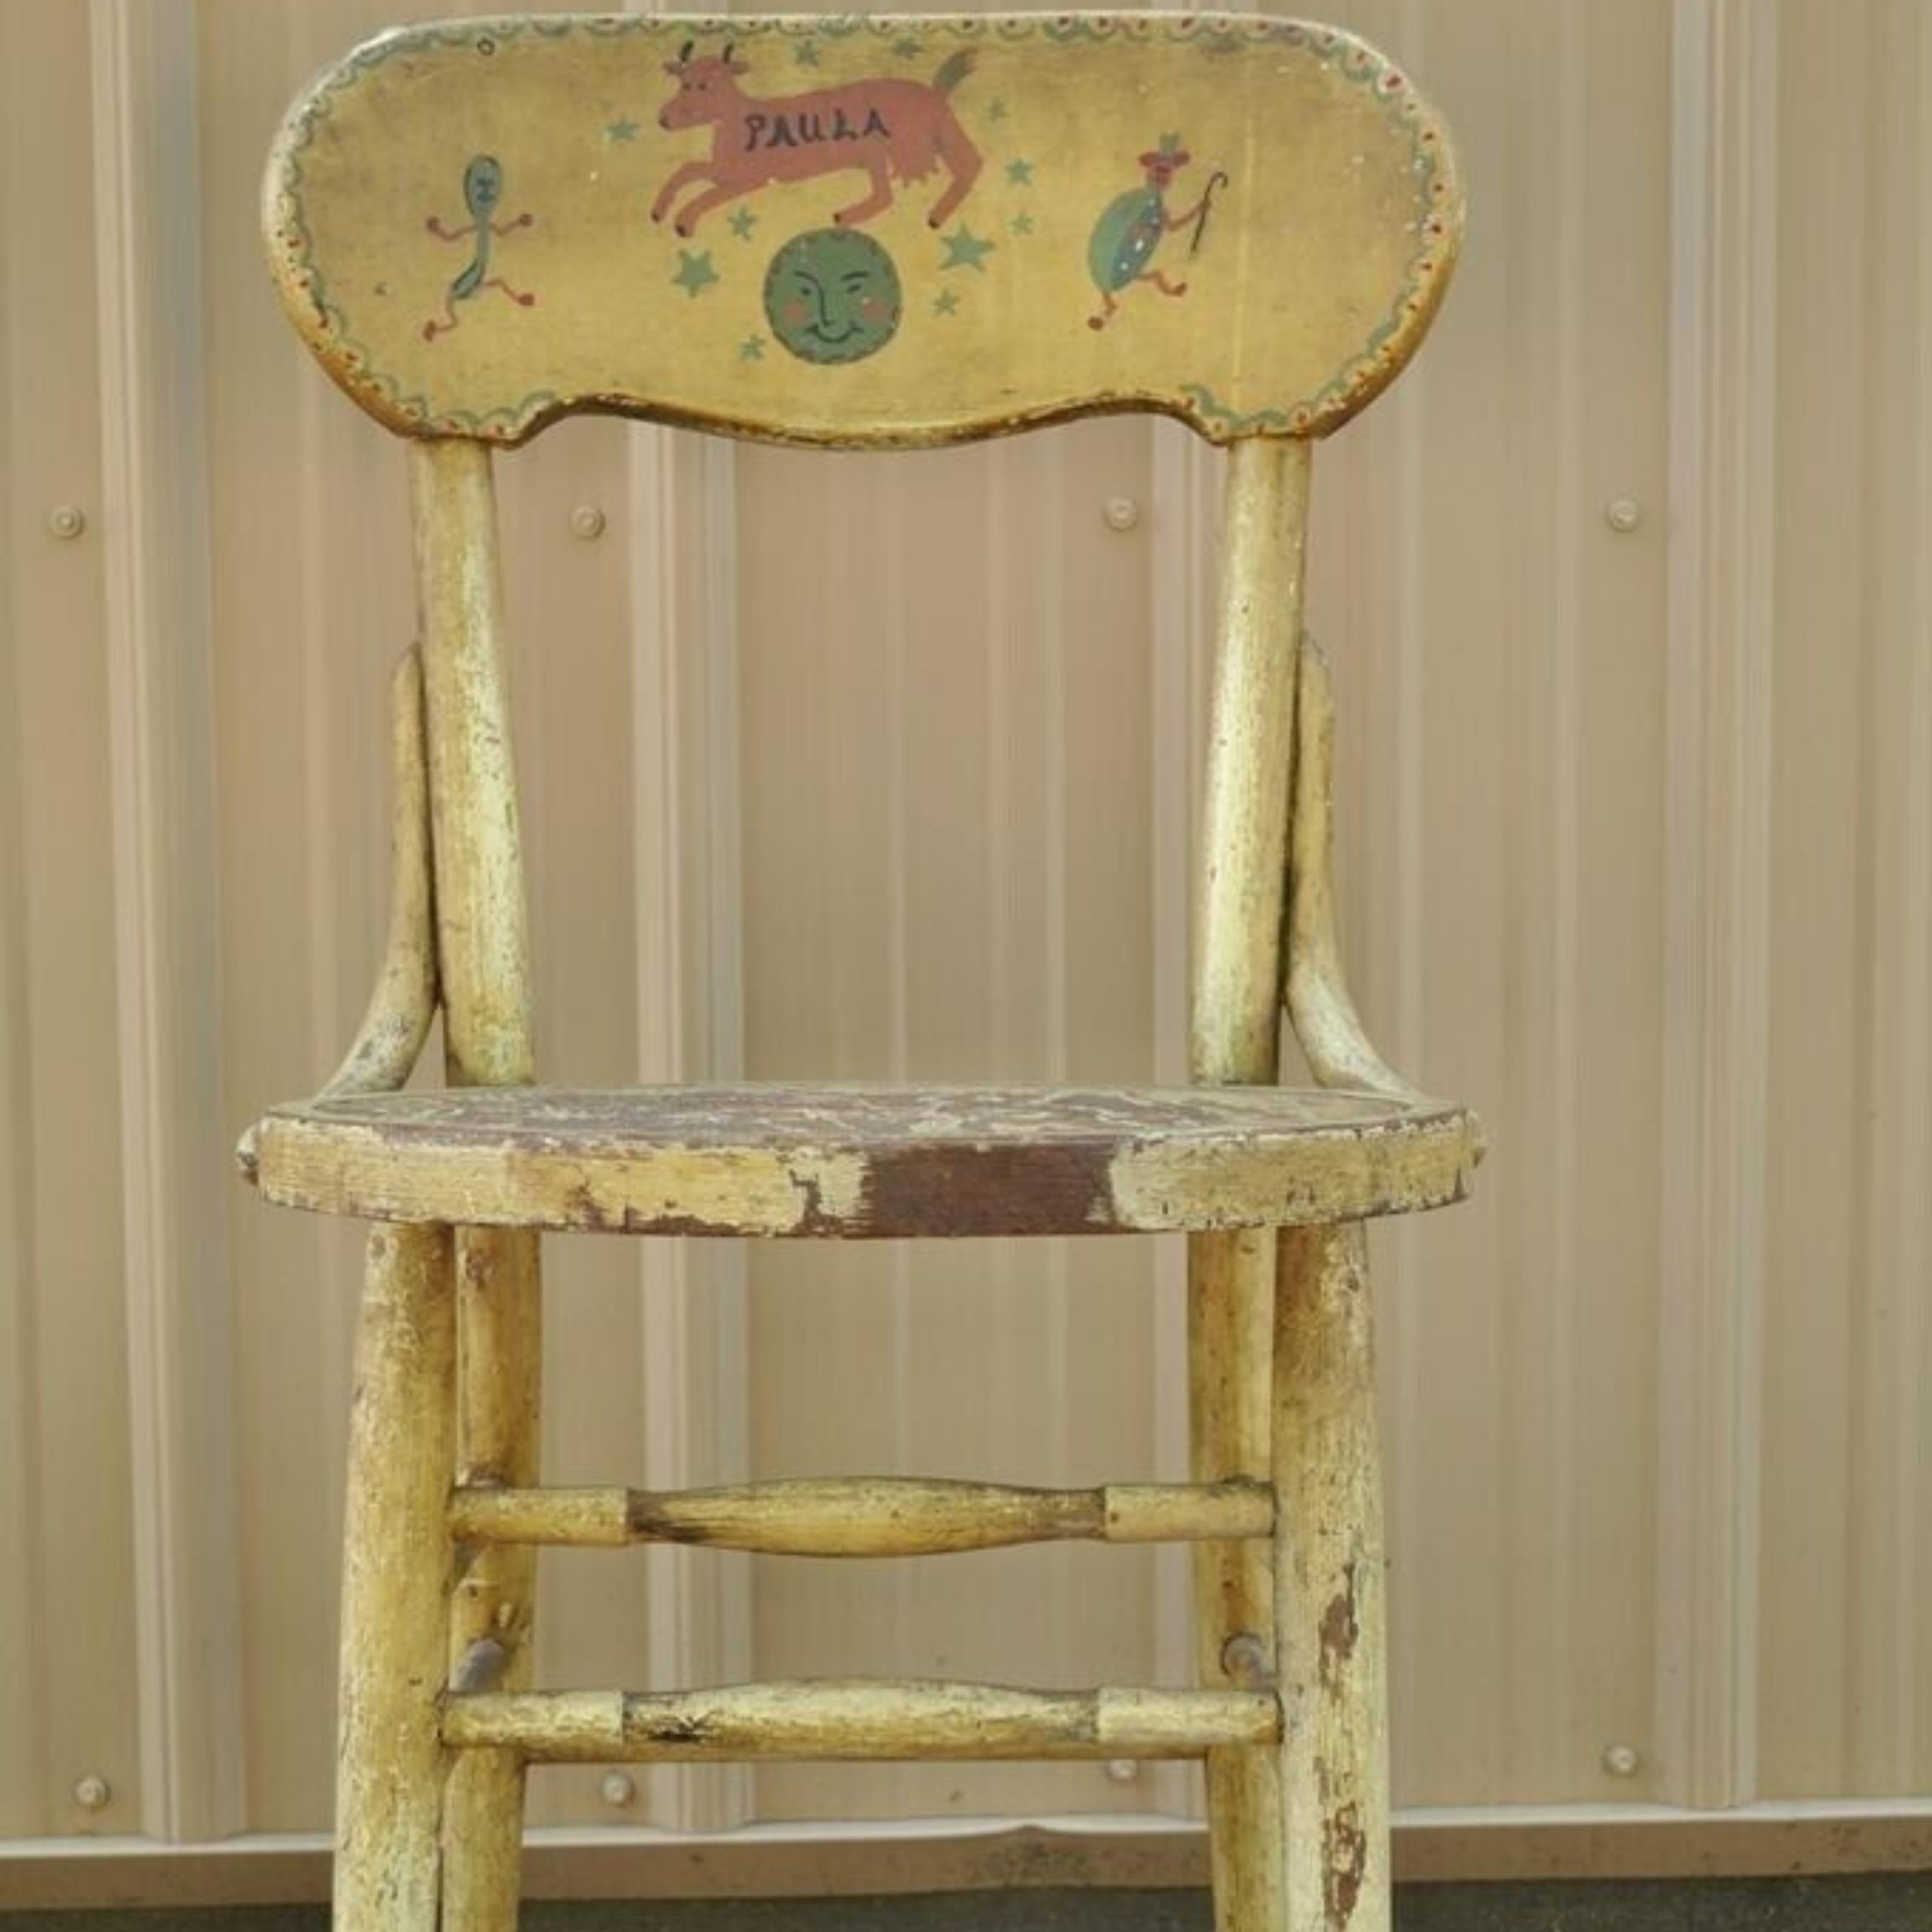 Chaise d'appoint rustique primitive peinte à la main. L'objet présente un dossier original peint à la main, une base à châssis, un très bel objet ancien. Circa Early 1900s. Dimensions : 33,5